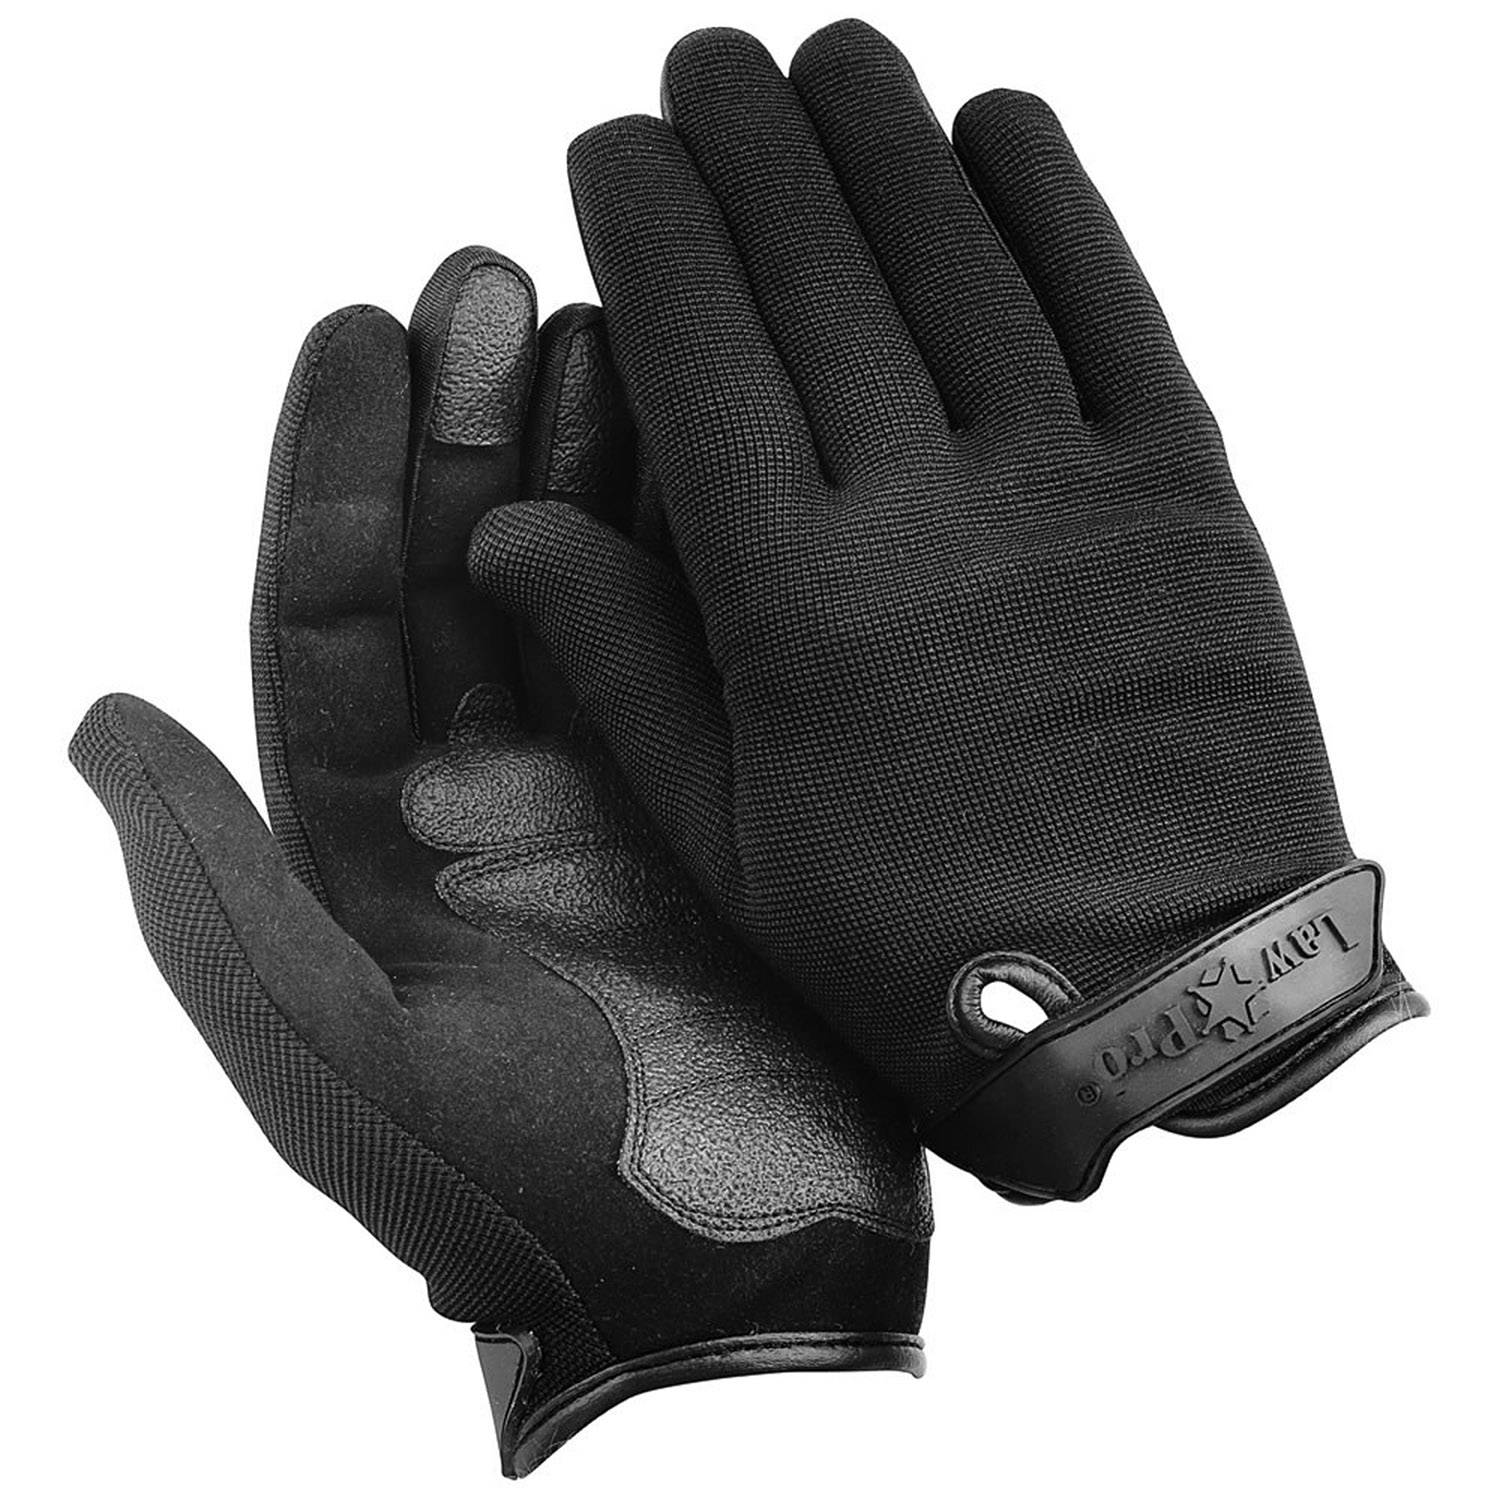 LawPro Lightweight Duty Gloves